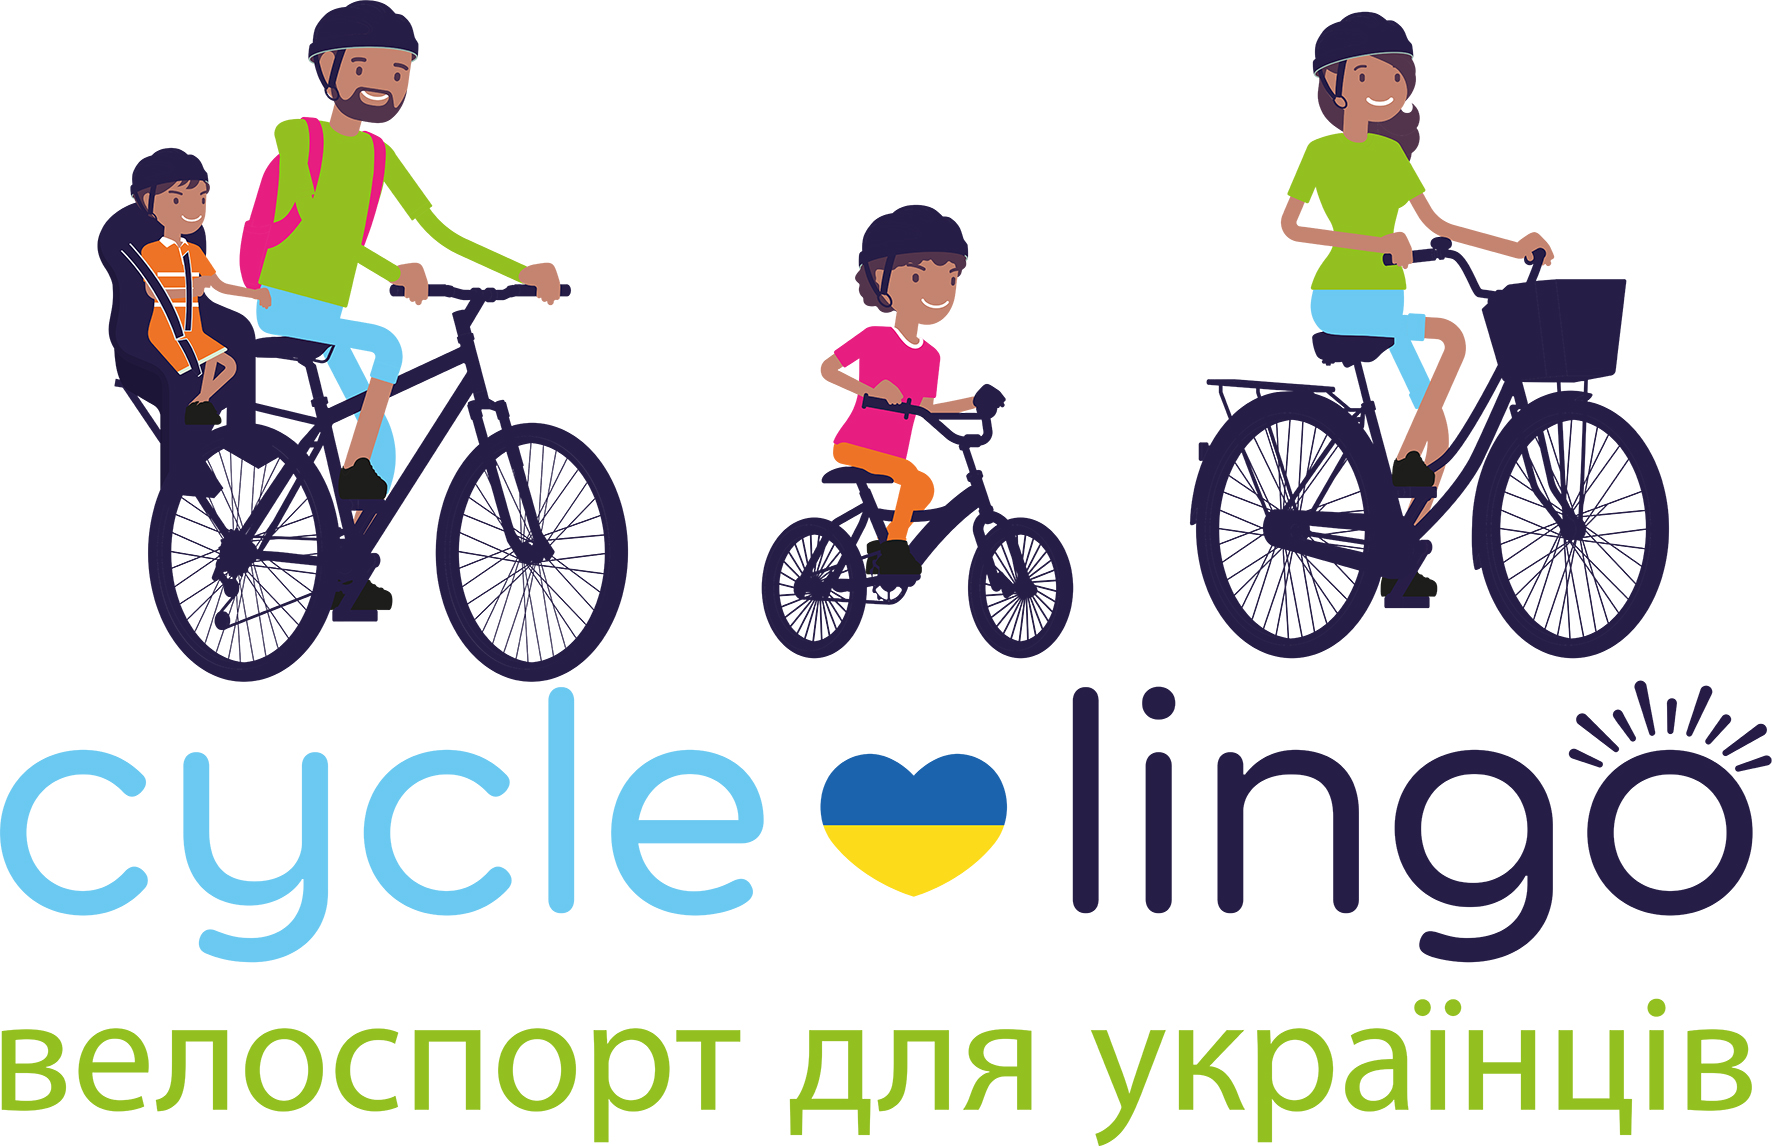 cycle-lingo logo.